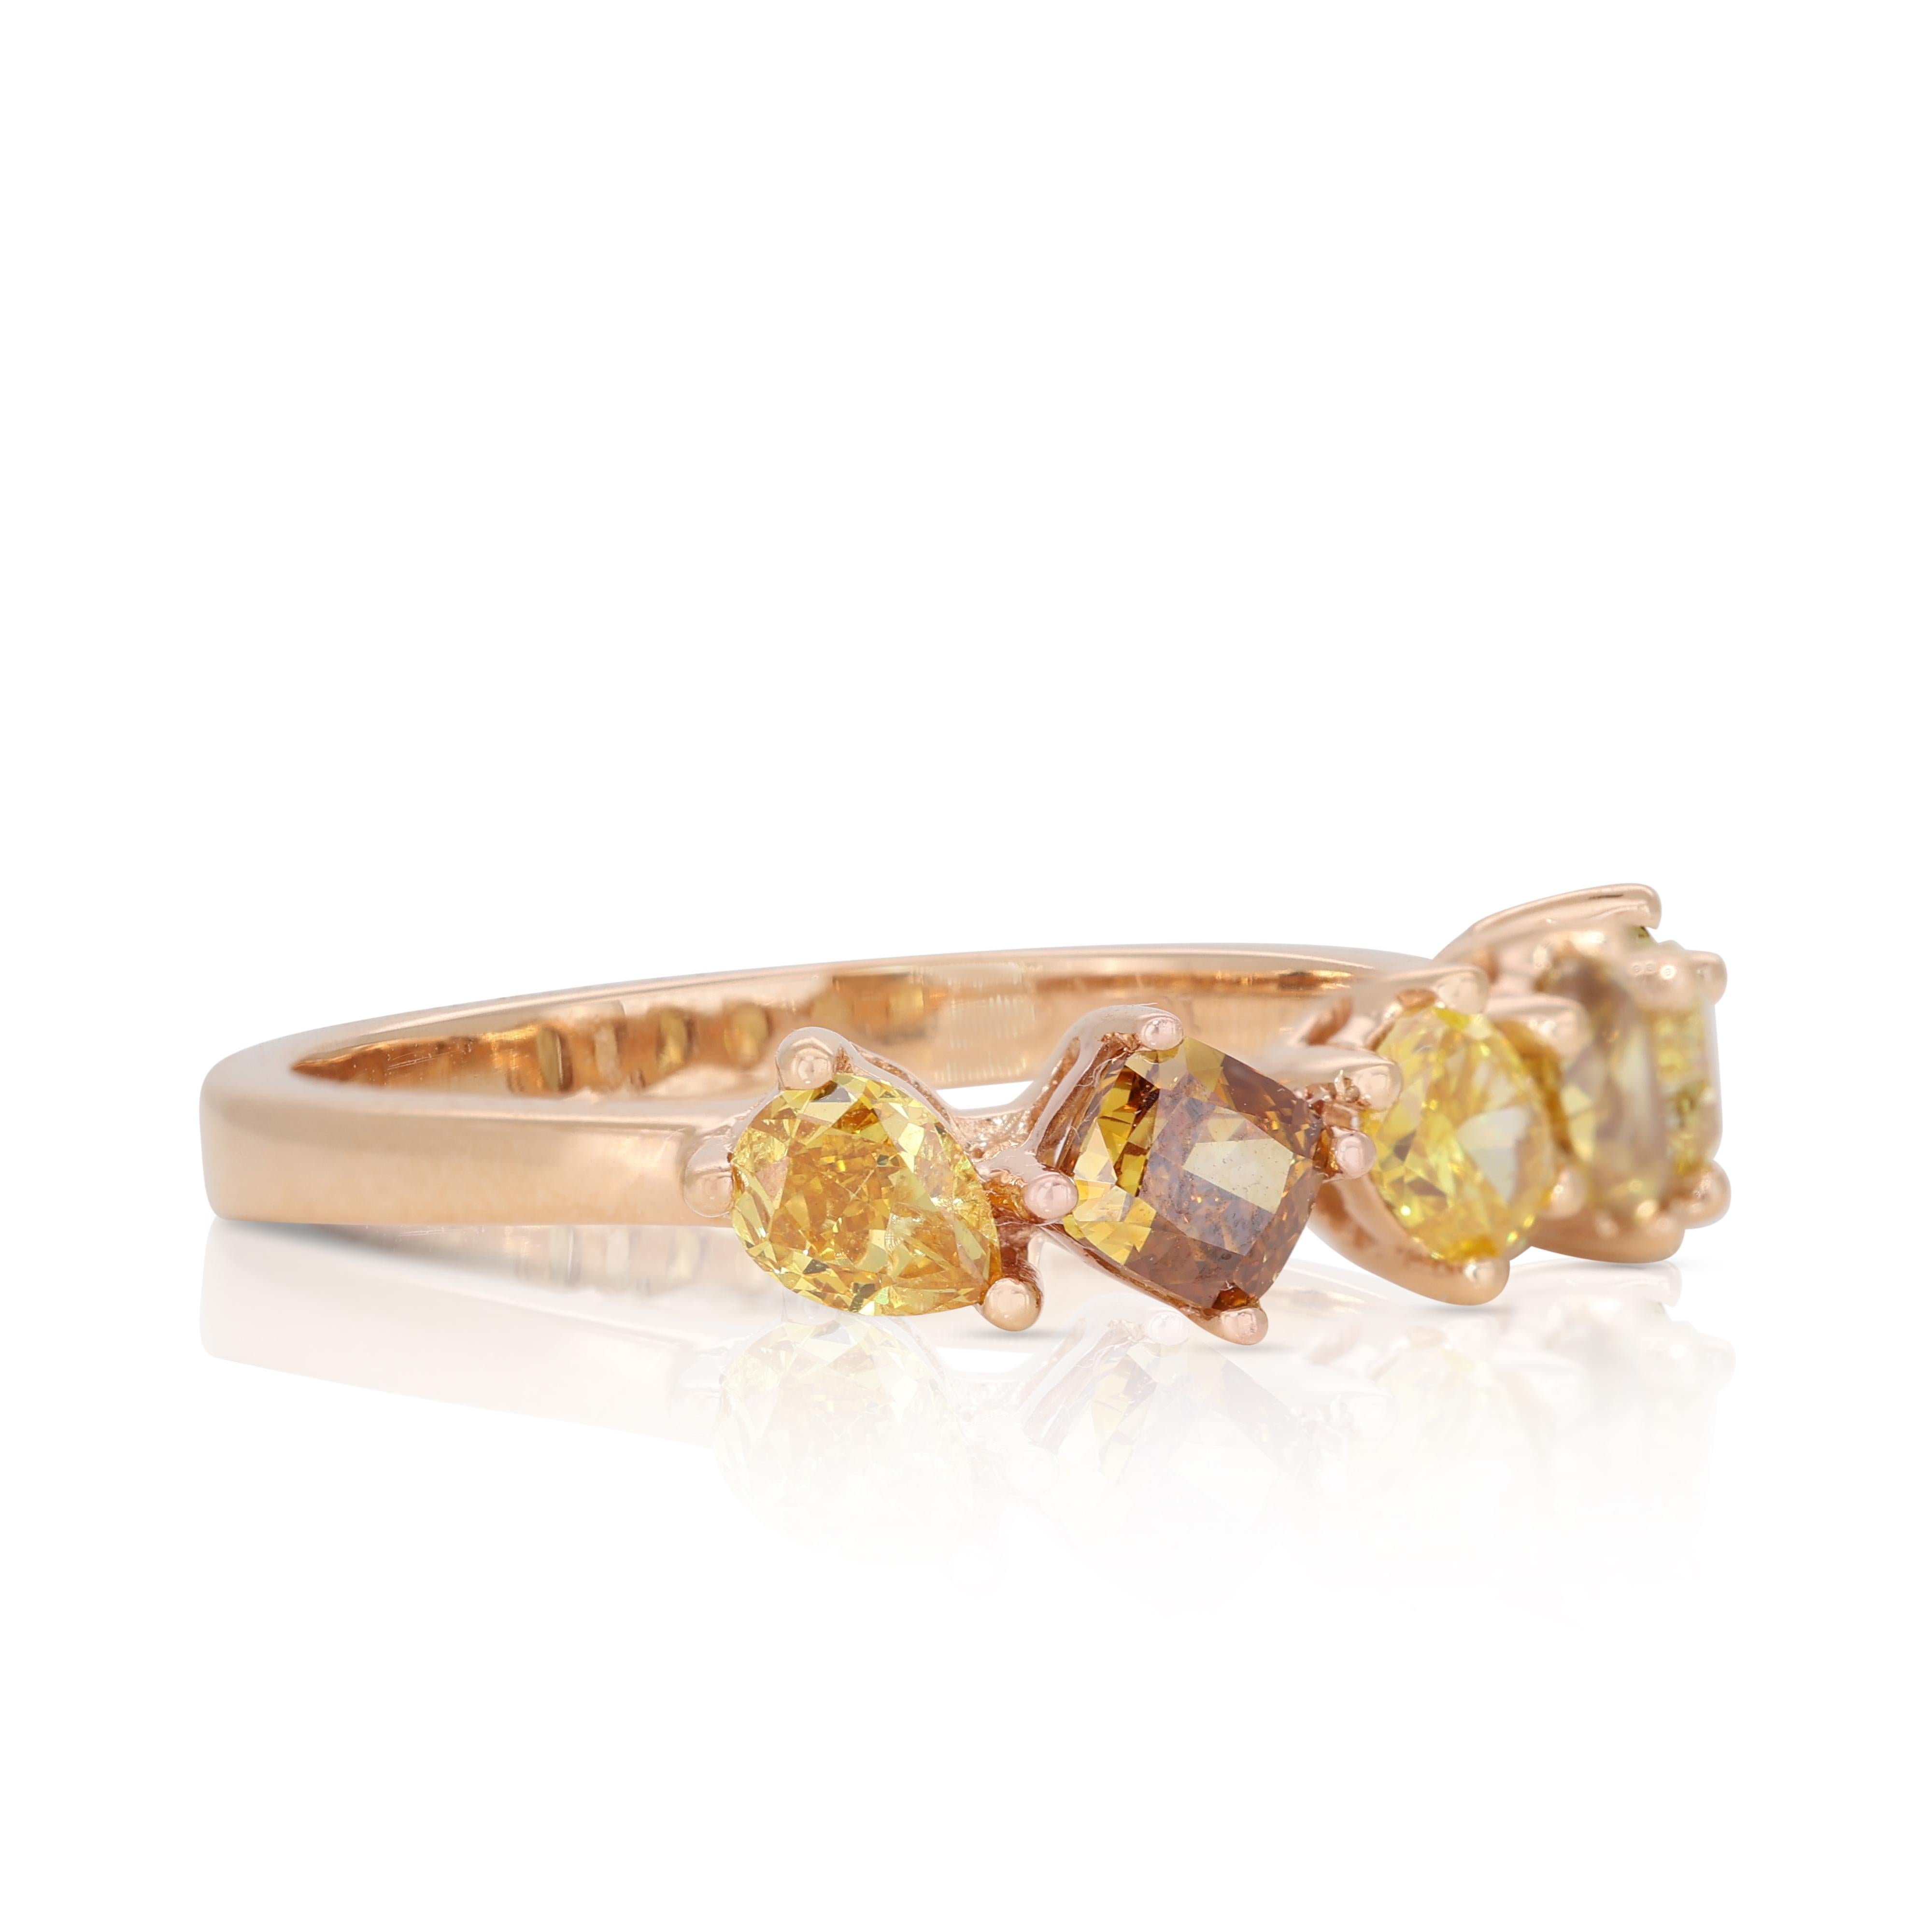 Bright 18k Roségold Fancy Colored Diamantring mit 1,00 ct - IGI zertifiziert

Dieser 18k Rose Gold Fancy Colored Diamond Ring zelebriert die Schönheit der Diamanten in ihren lebhaftesten und bezauberndsten Farben. Dieses exquisite Stück besticht